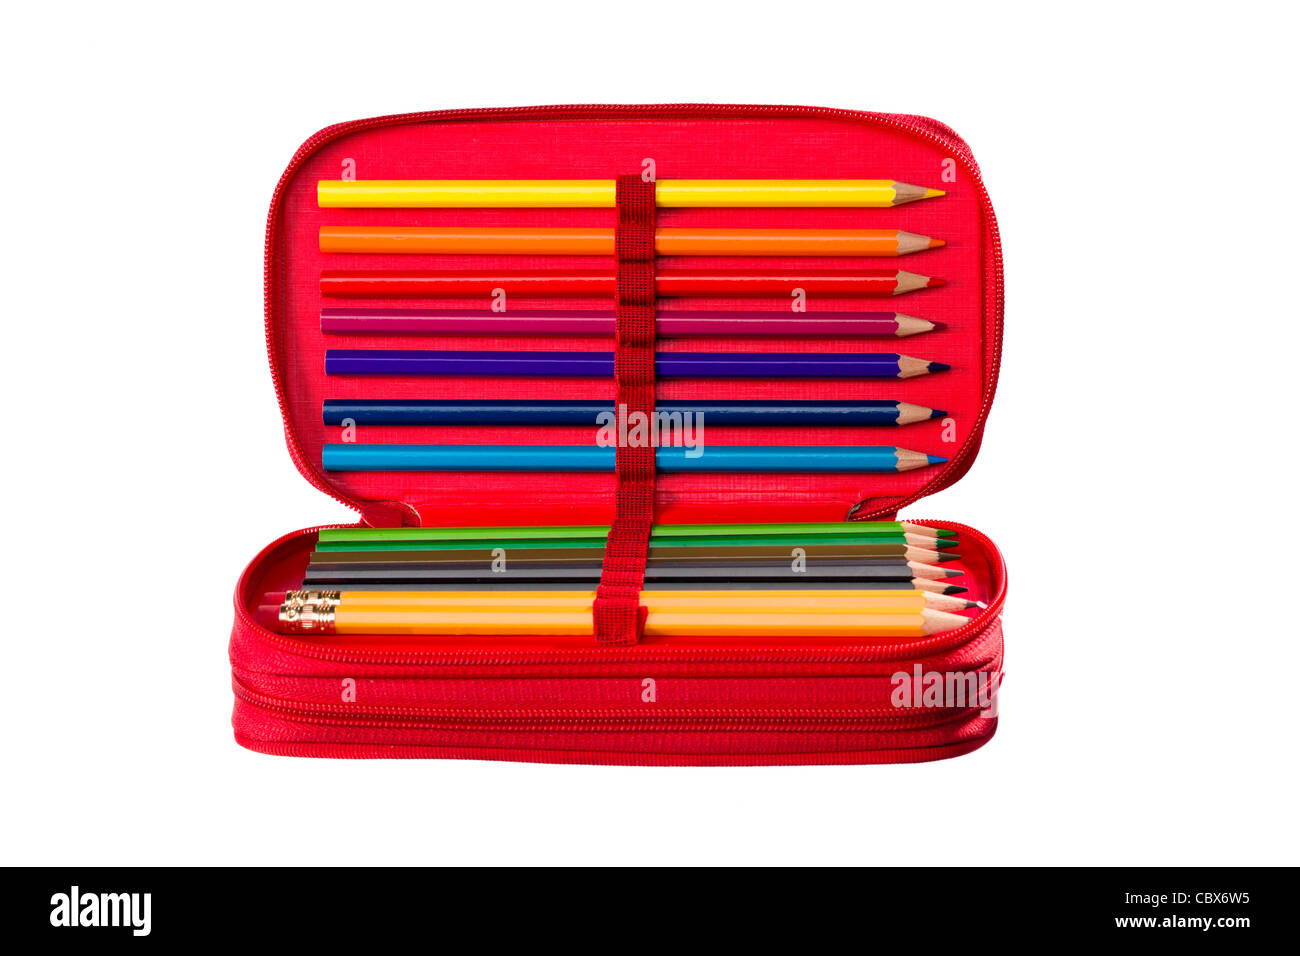 Pencil Case Pencils, Office Pencil Cases, School Pencil Cases